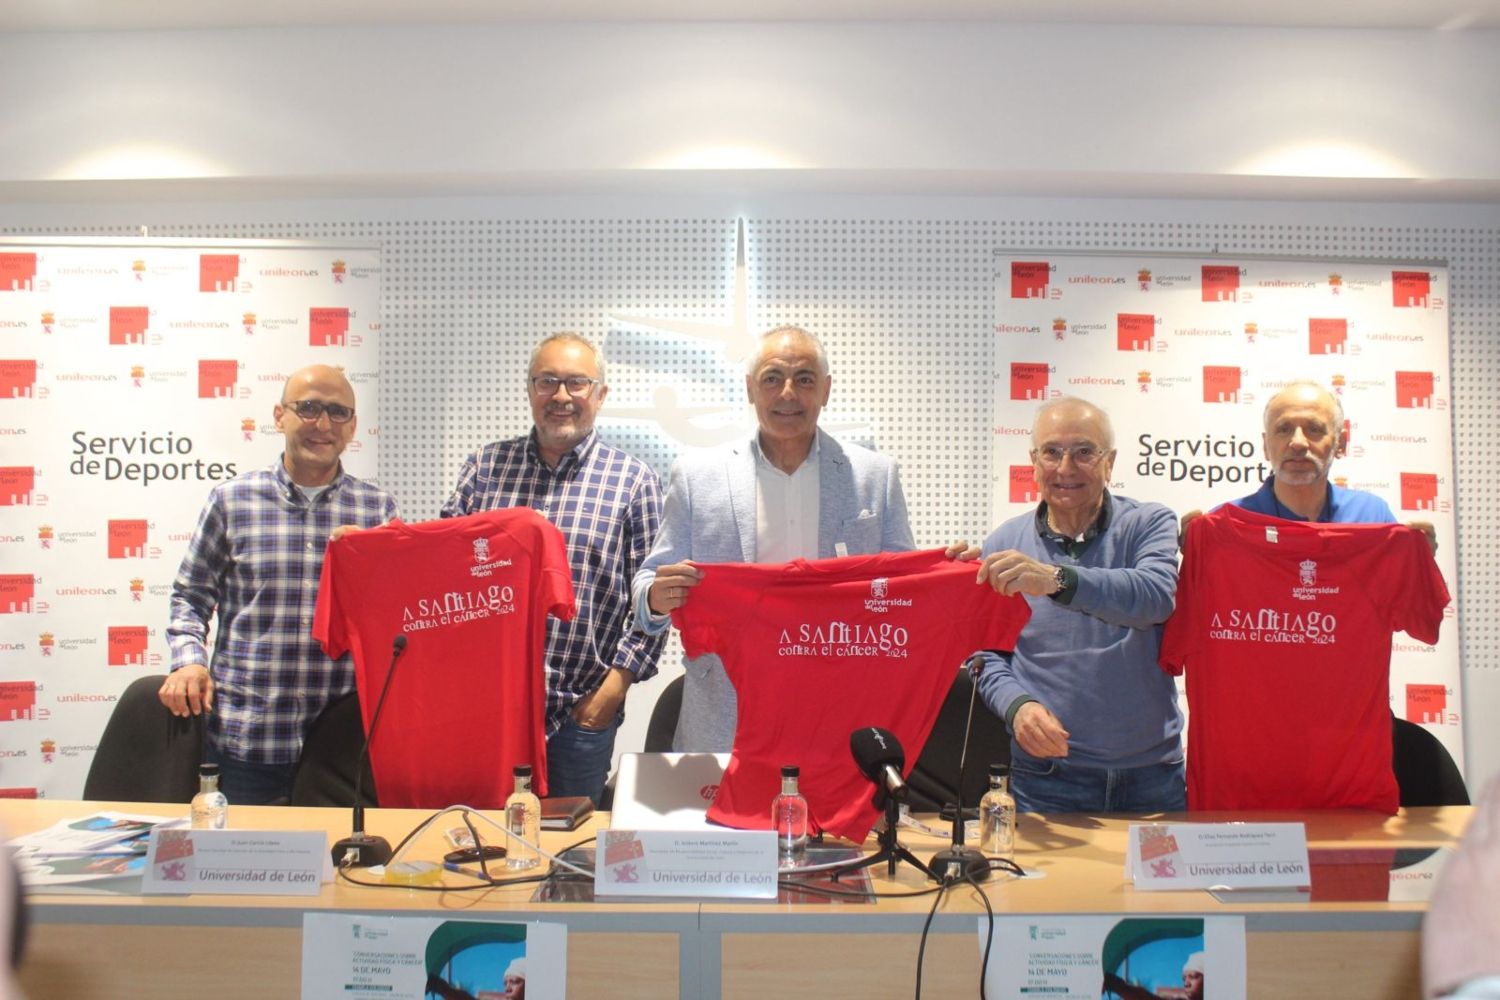 La carrera 'A Santiago contra el cáncer' vuelve a marcar el paso solidario en su recorrido por la provincia de León este junio